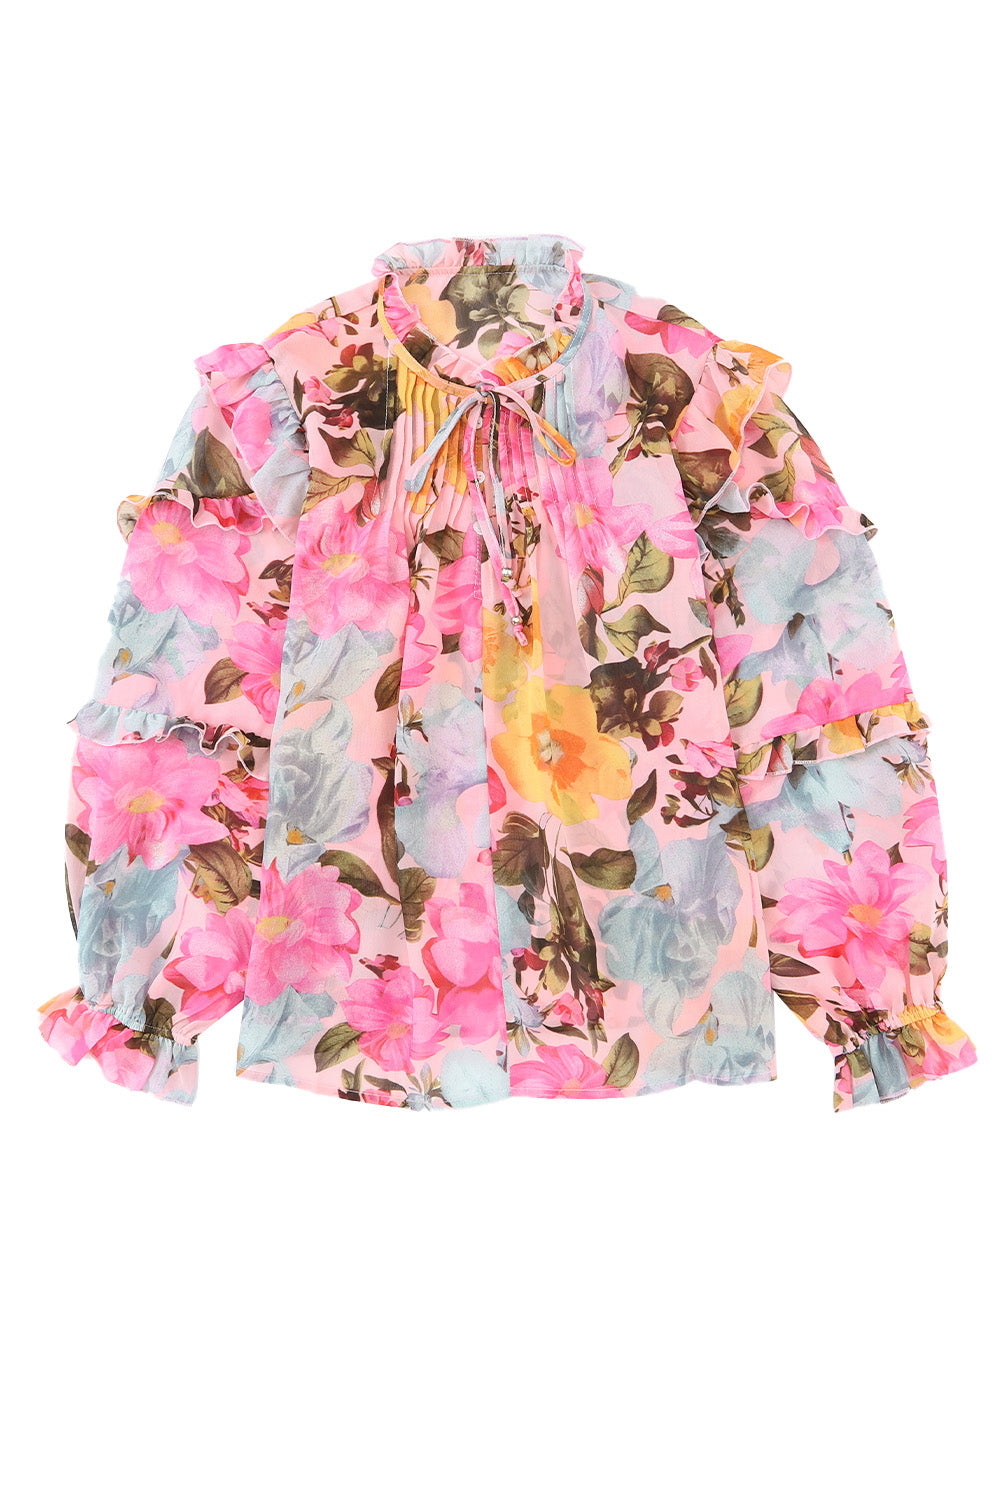 Rožnata bluza z dolgimi rokavi v več stopnjah s cvetličnim potiskom